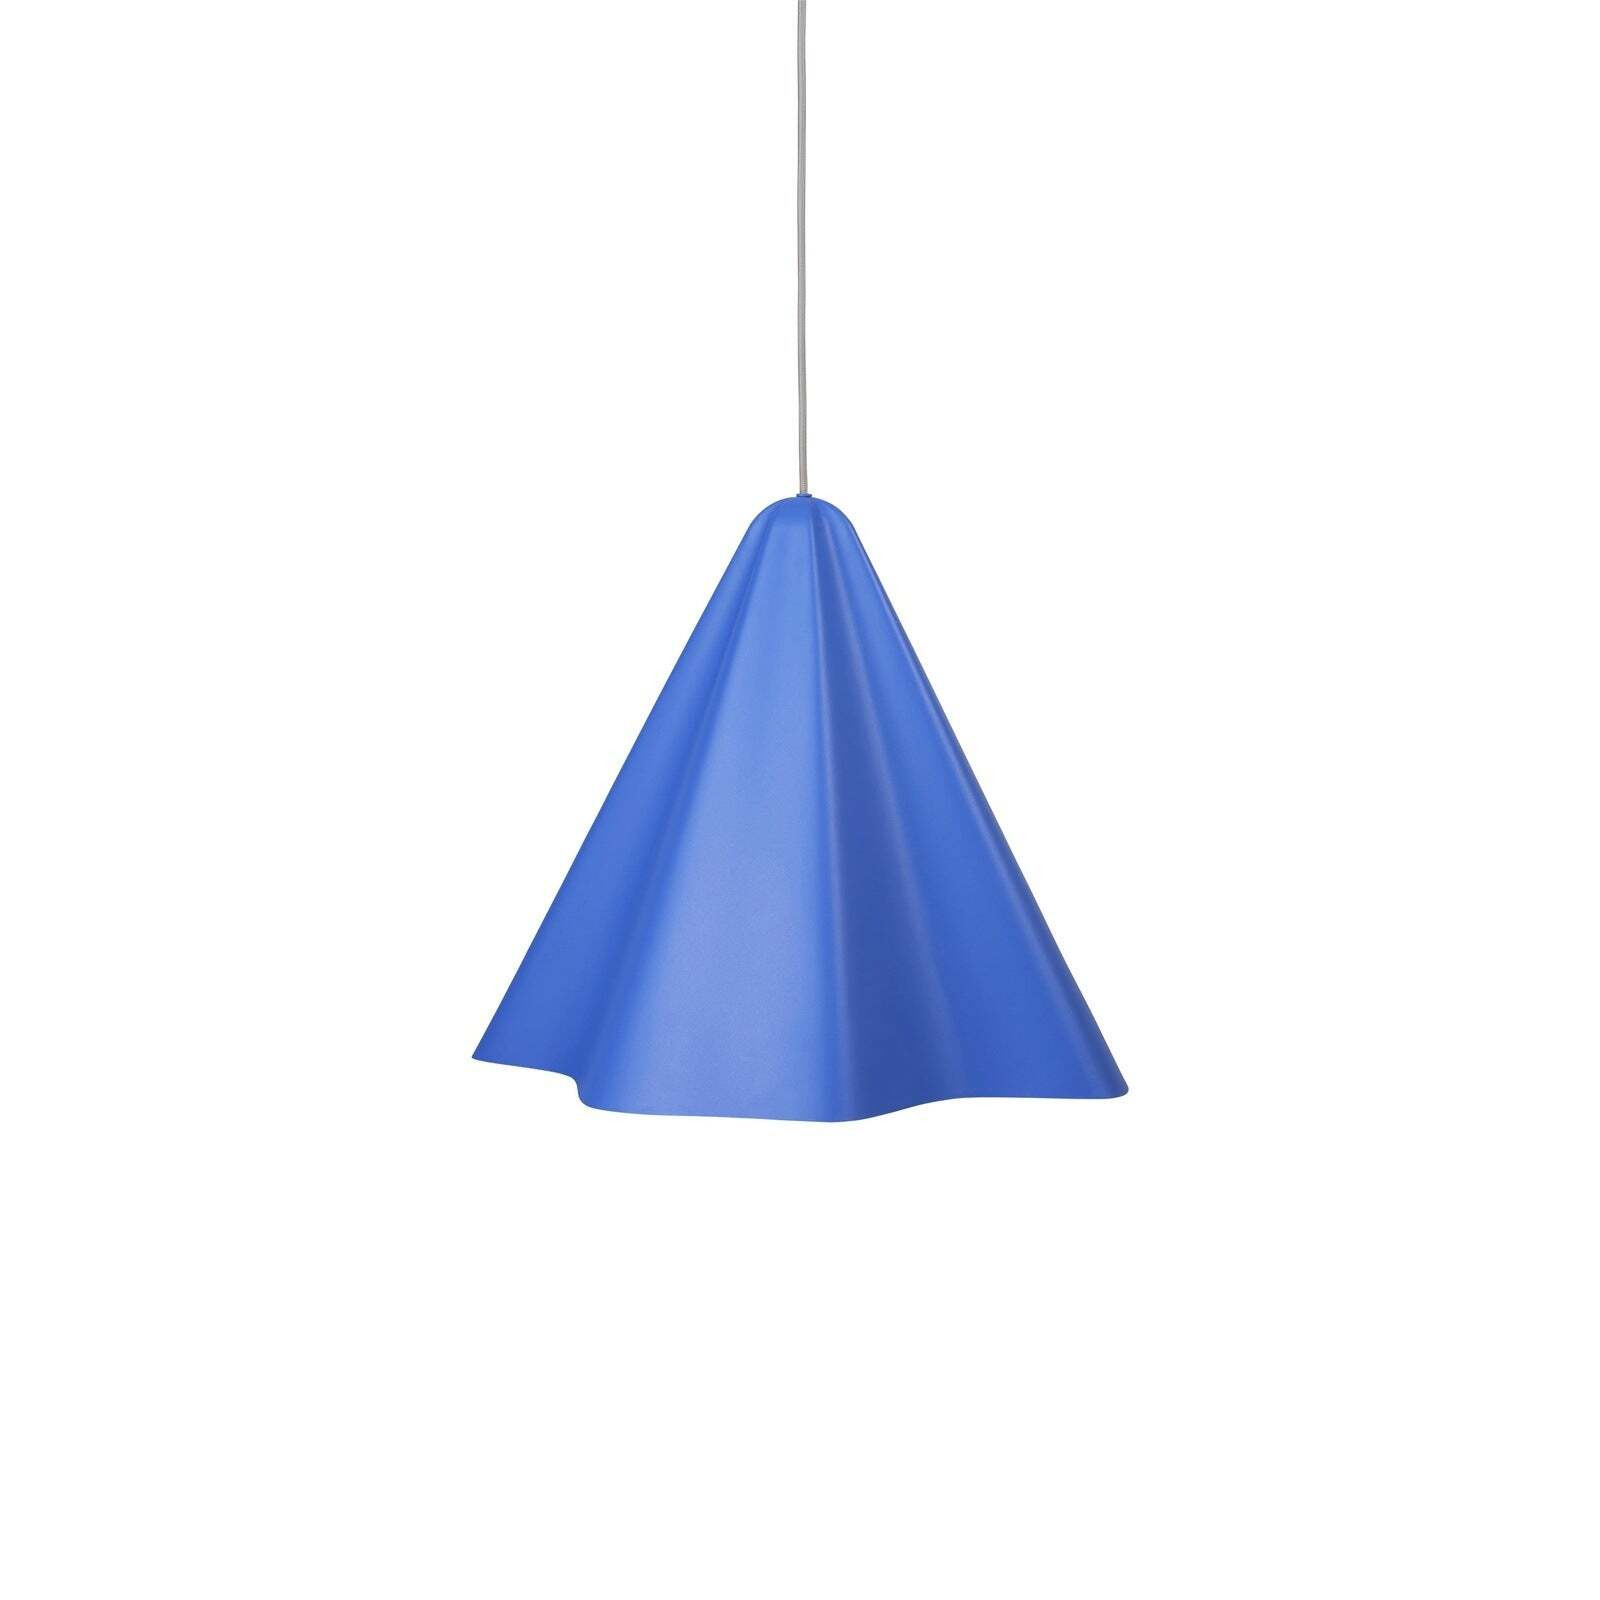 Broste Copenhagen Skirt Pendant Lamp in Baja Blue / Small - image 1